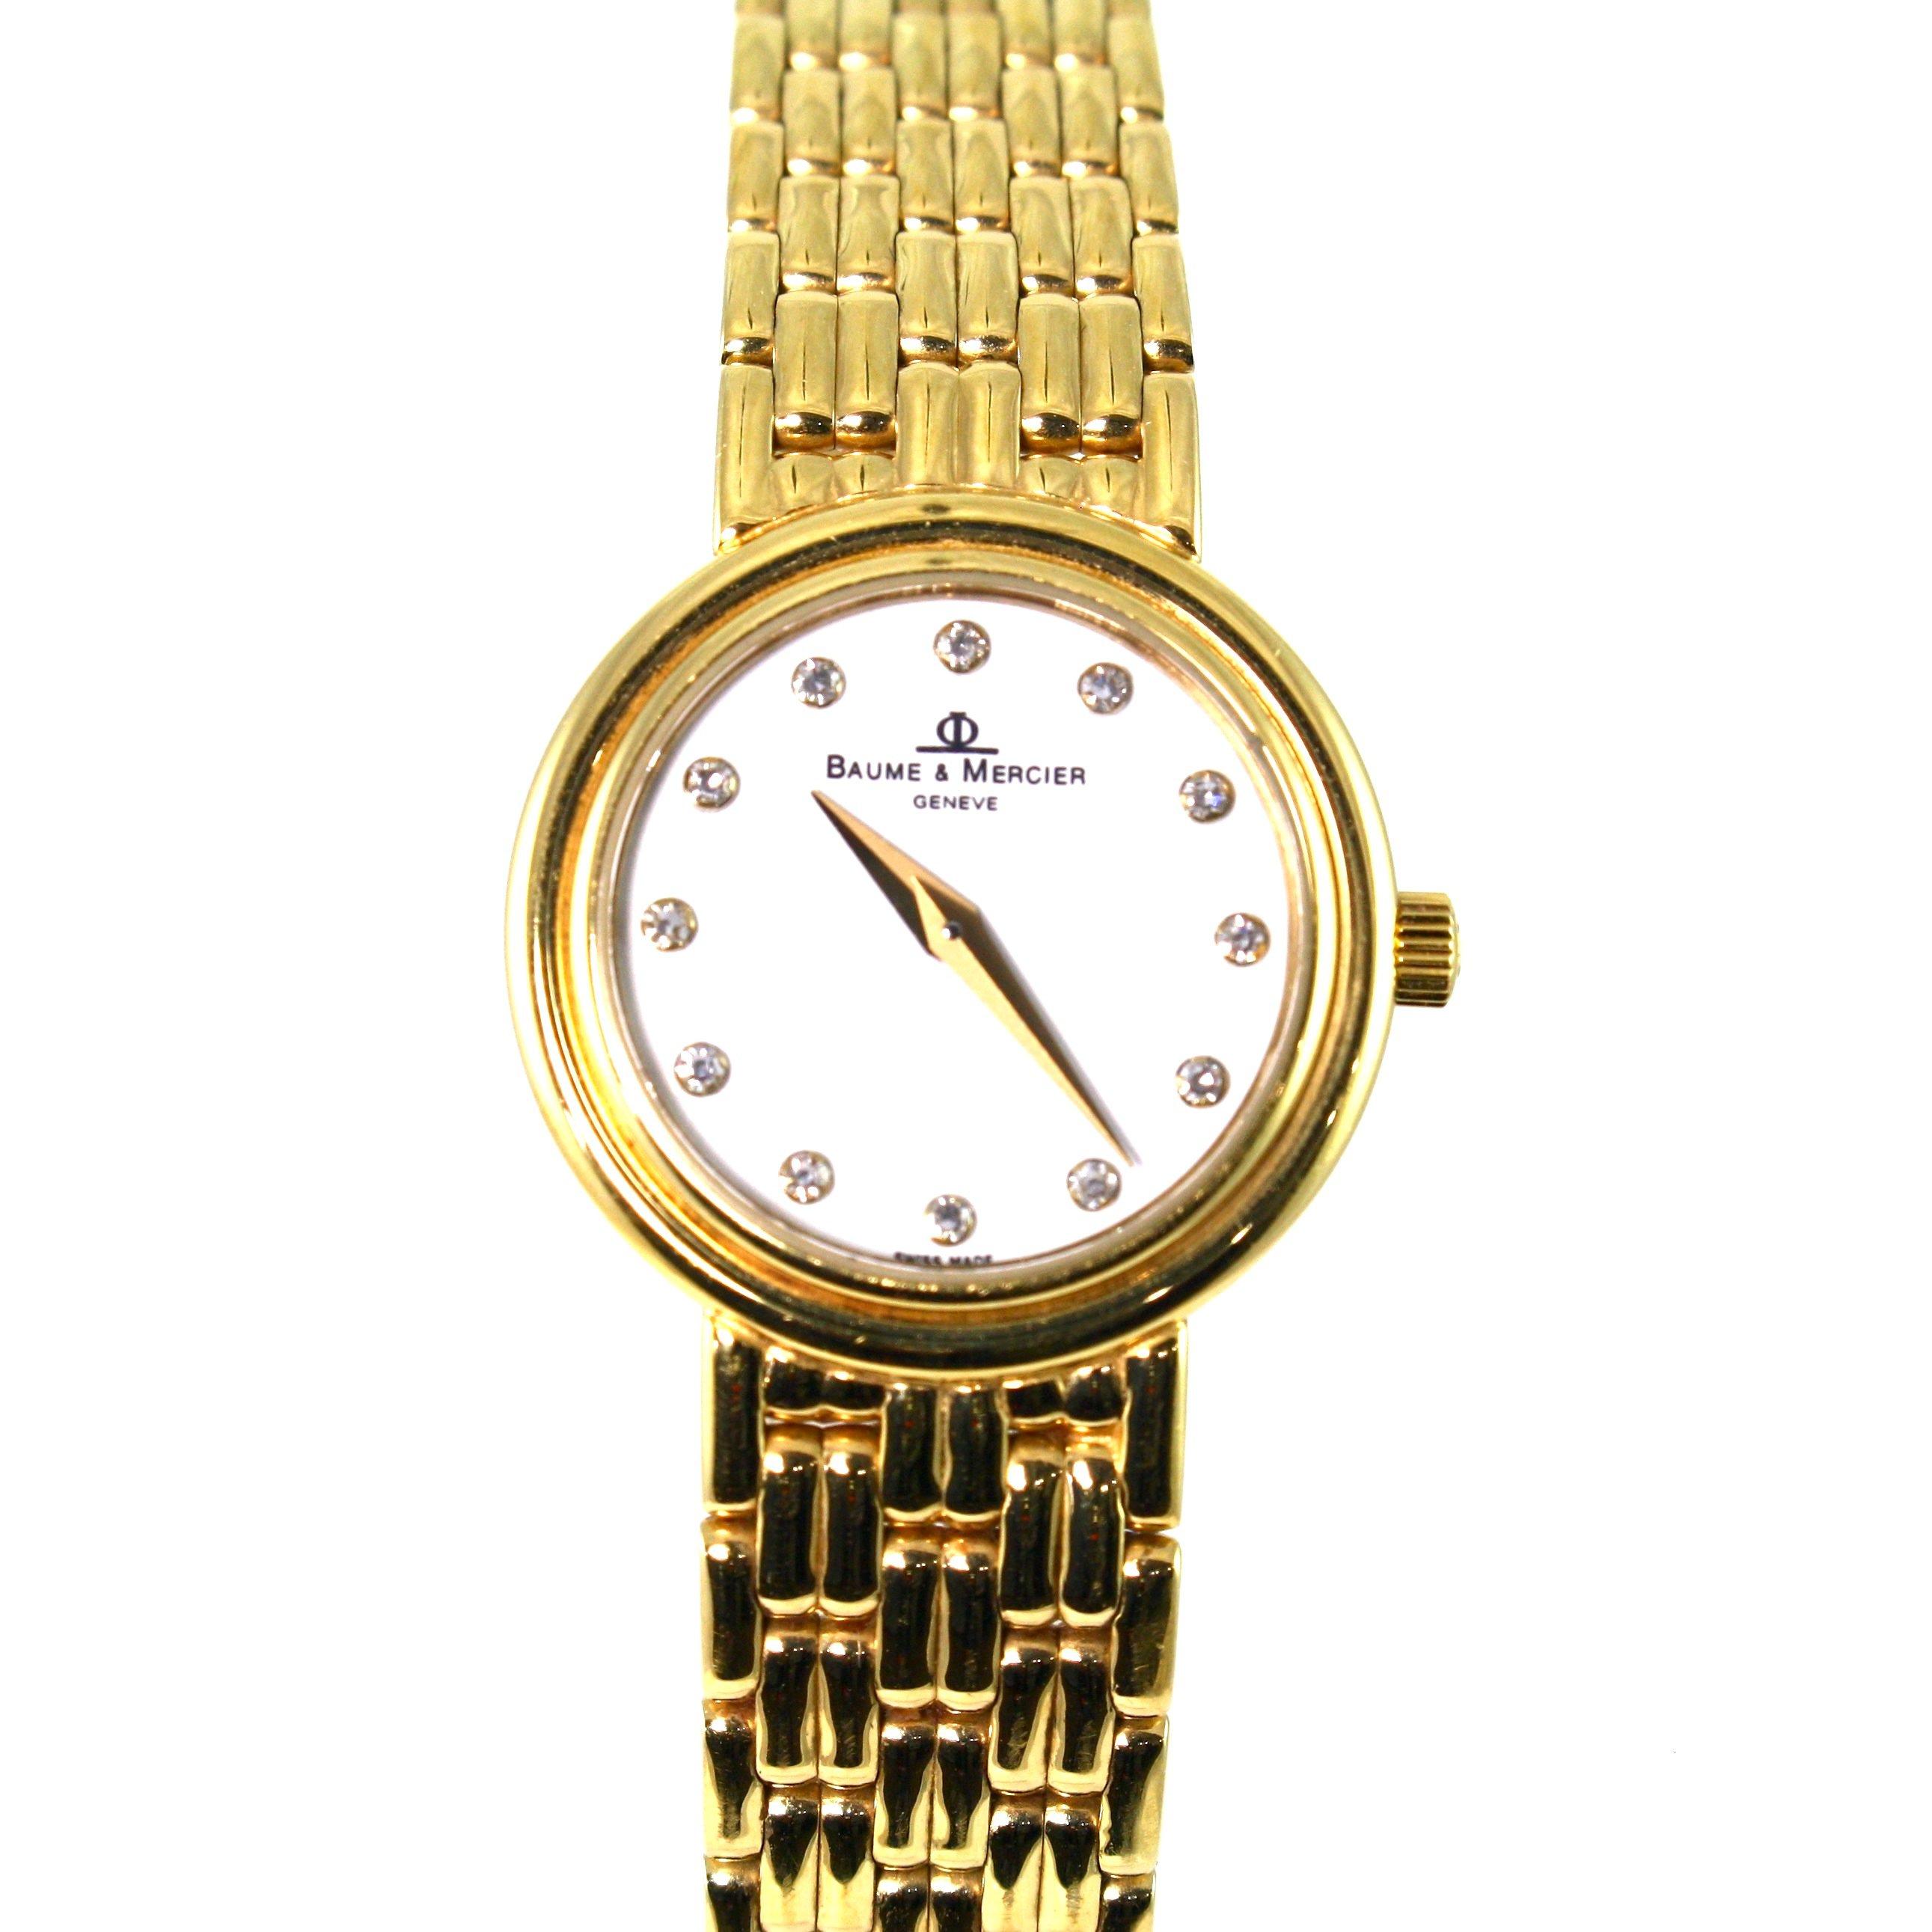 Authentic estate Baume & Mercier 14K gold & diamond wristwatch